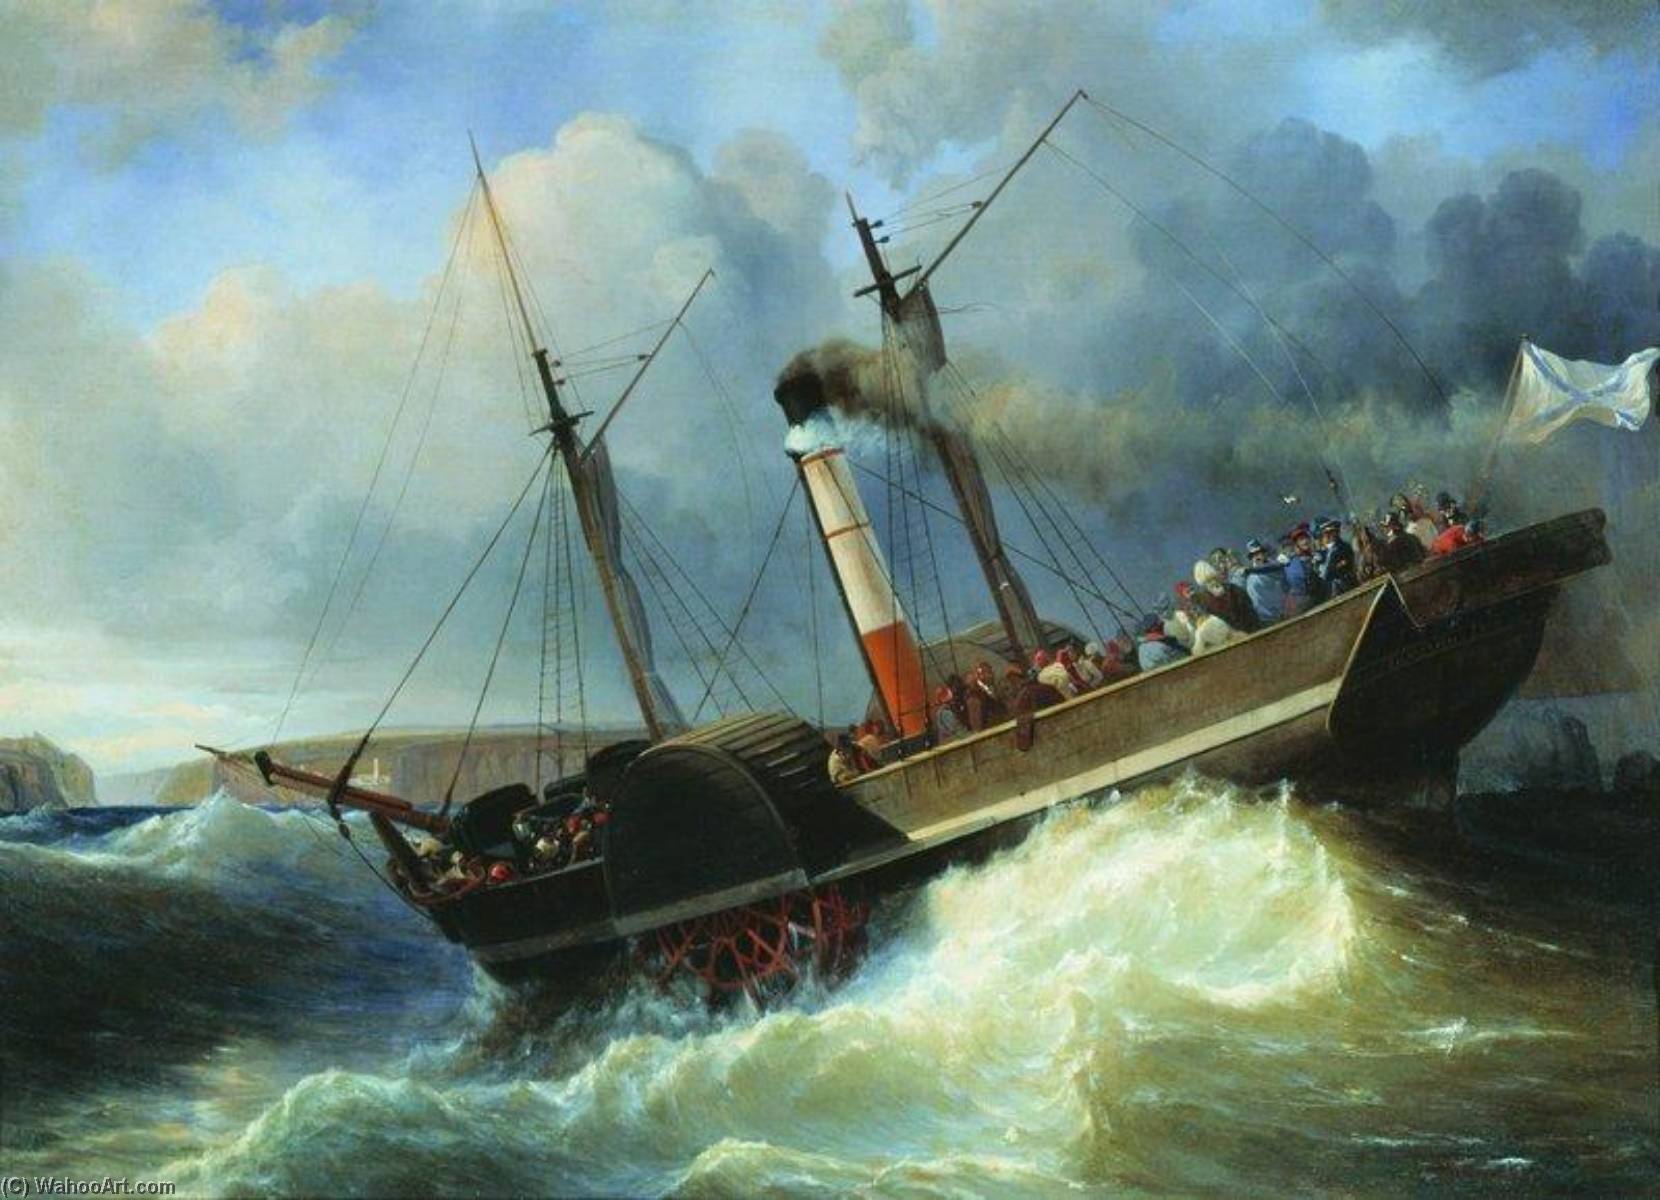 Compre Museu De Reproduções De Arte O navio de passageiros do imperador Nicholas no Mar Negro por Alexey Petrovich Bogolyubov | ArtsDot.com